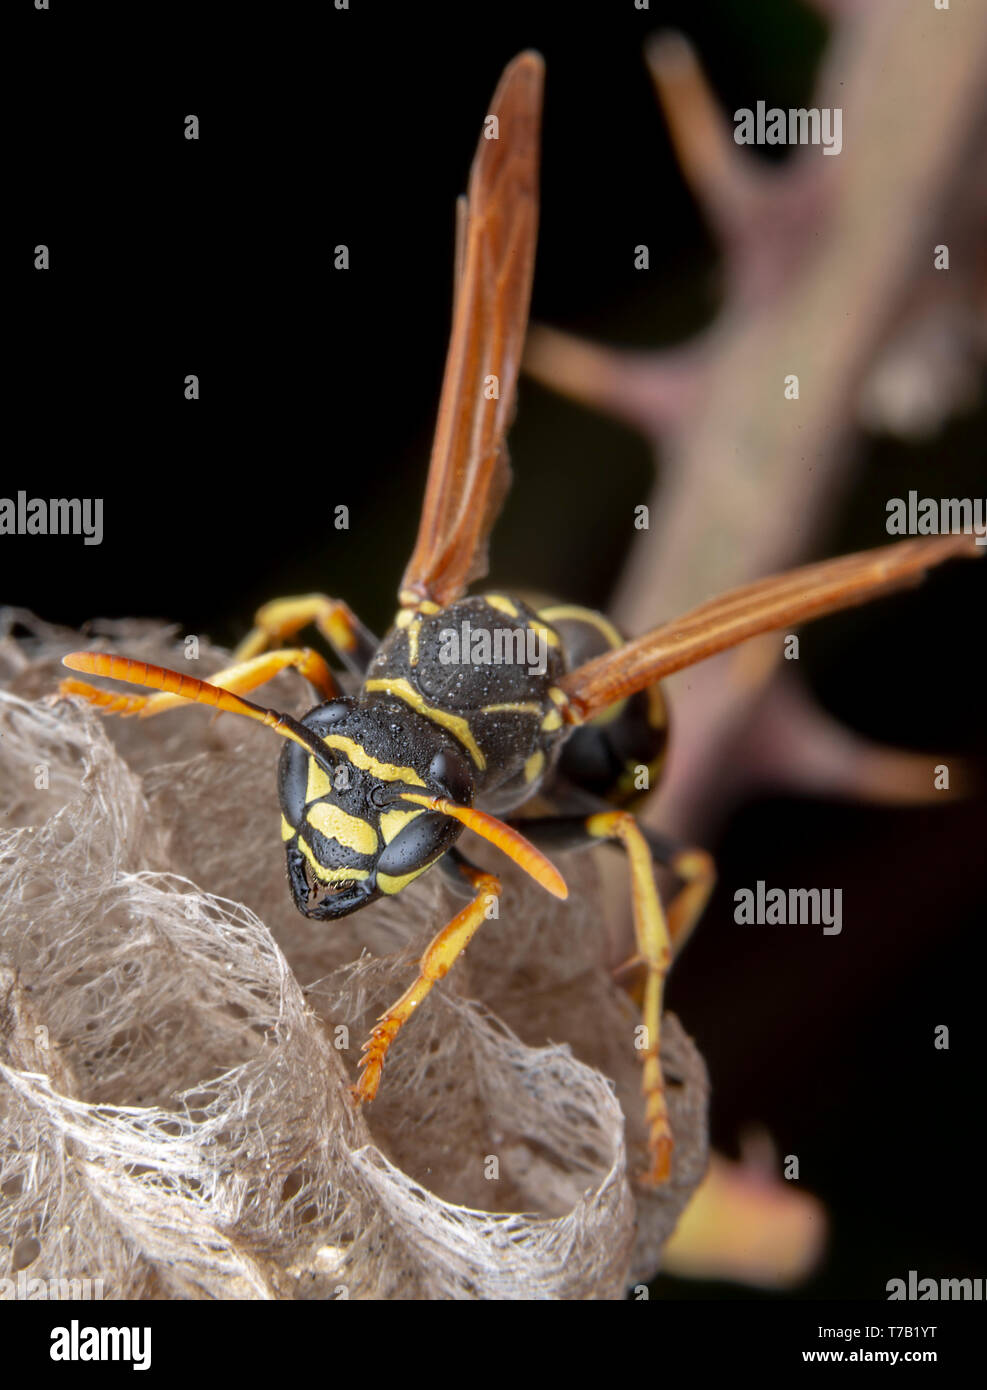 Wiorker femmina Polistes nympha wasp protegge il suo nido da attacchi Foto Stock